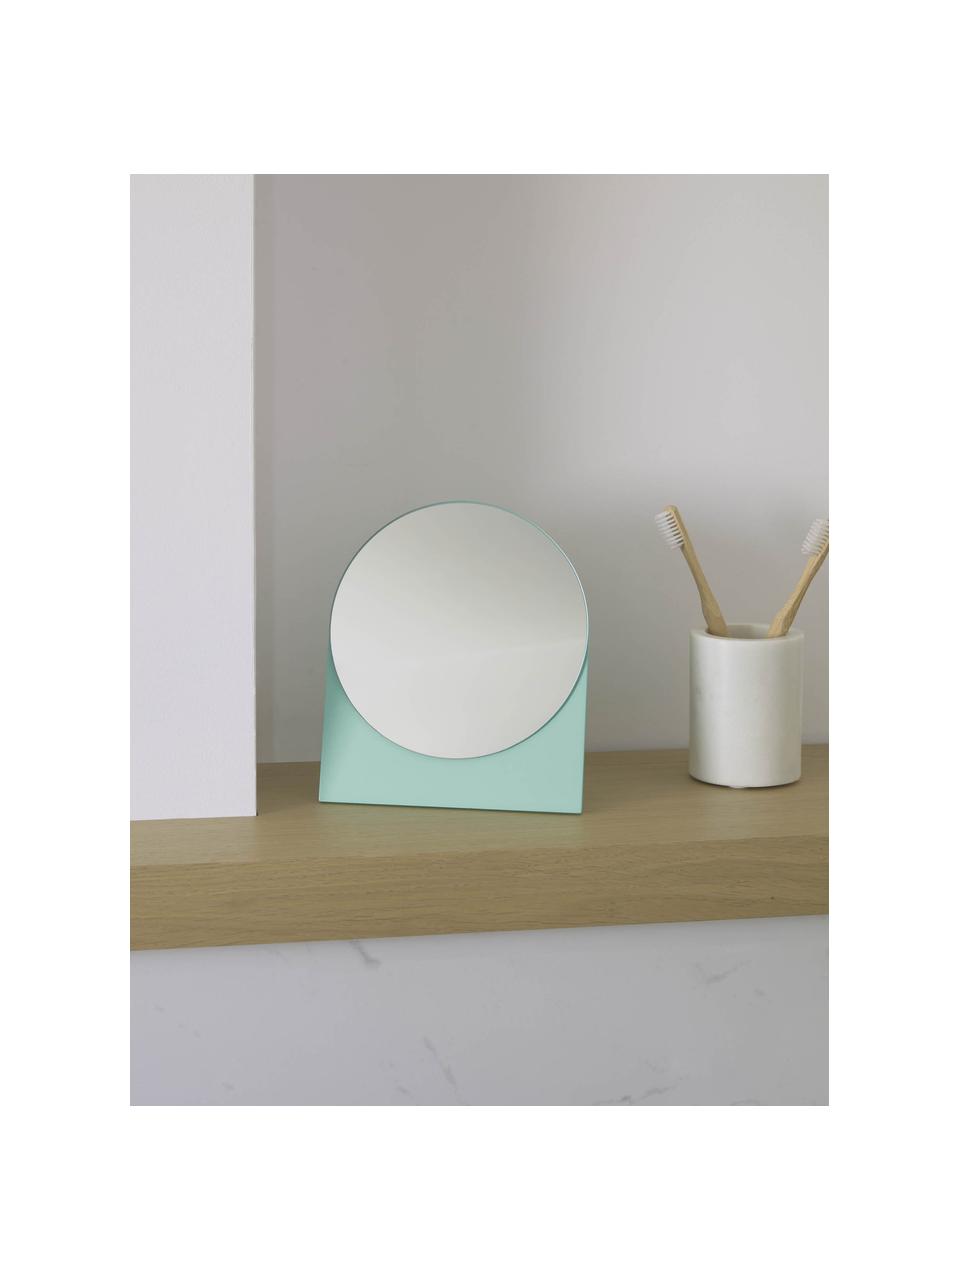 Kosmetické zrcadlo s dřevěným rámem Mica, Zelená, Š 17 cm, V 20 cm